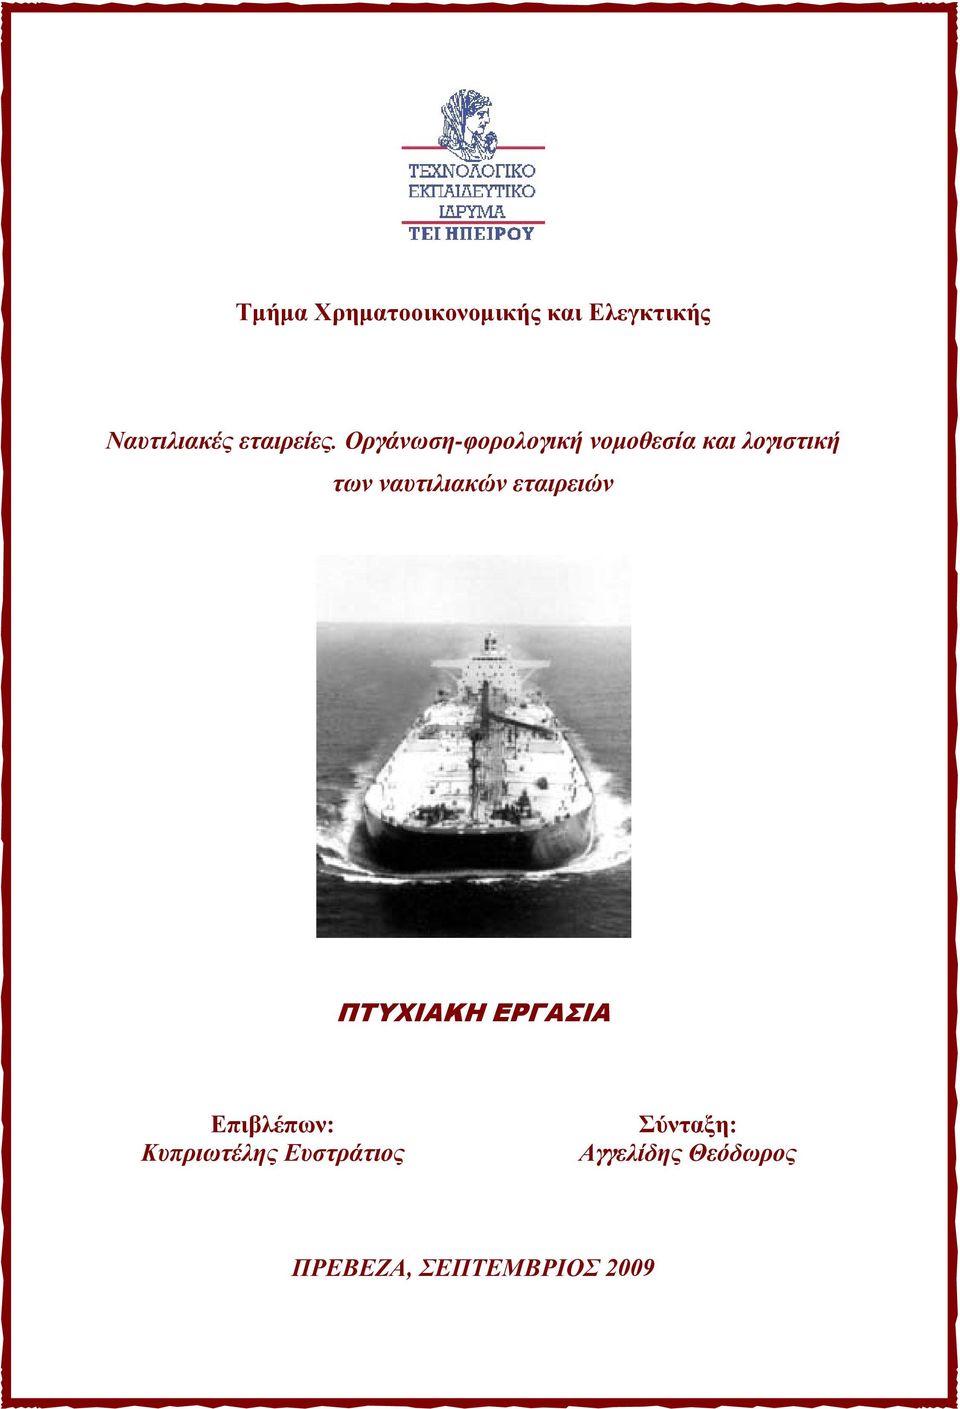 Οργάνωση-φορολογική νομοθεσία και λογιστική των ναυτιλιακών